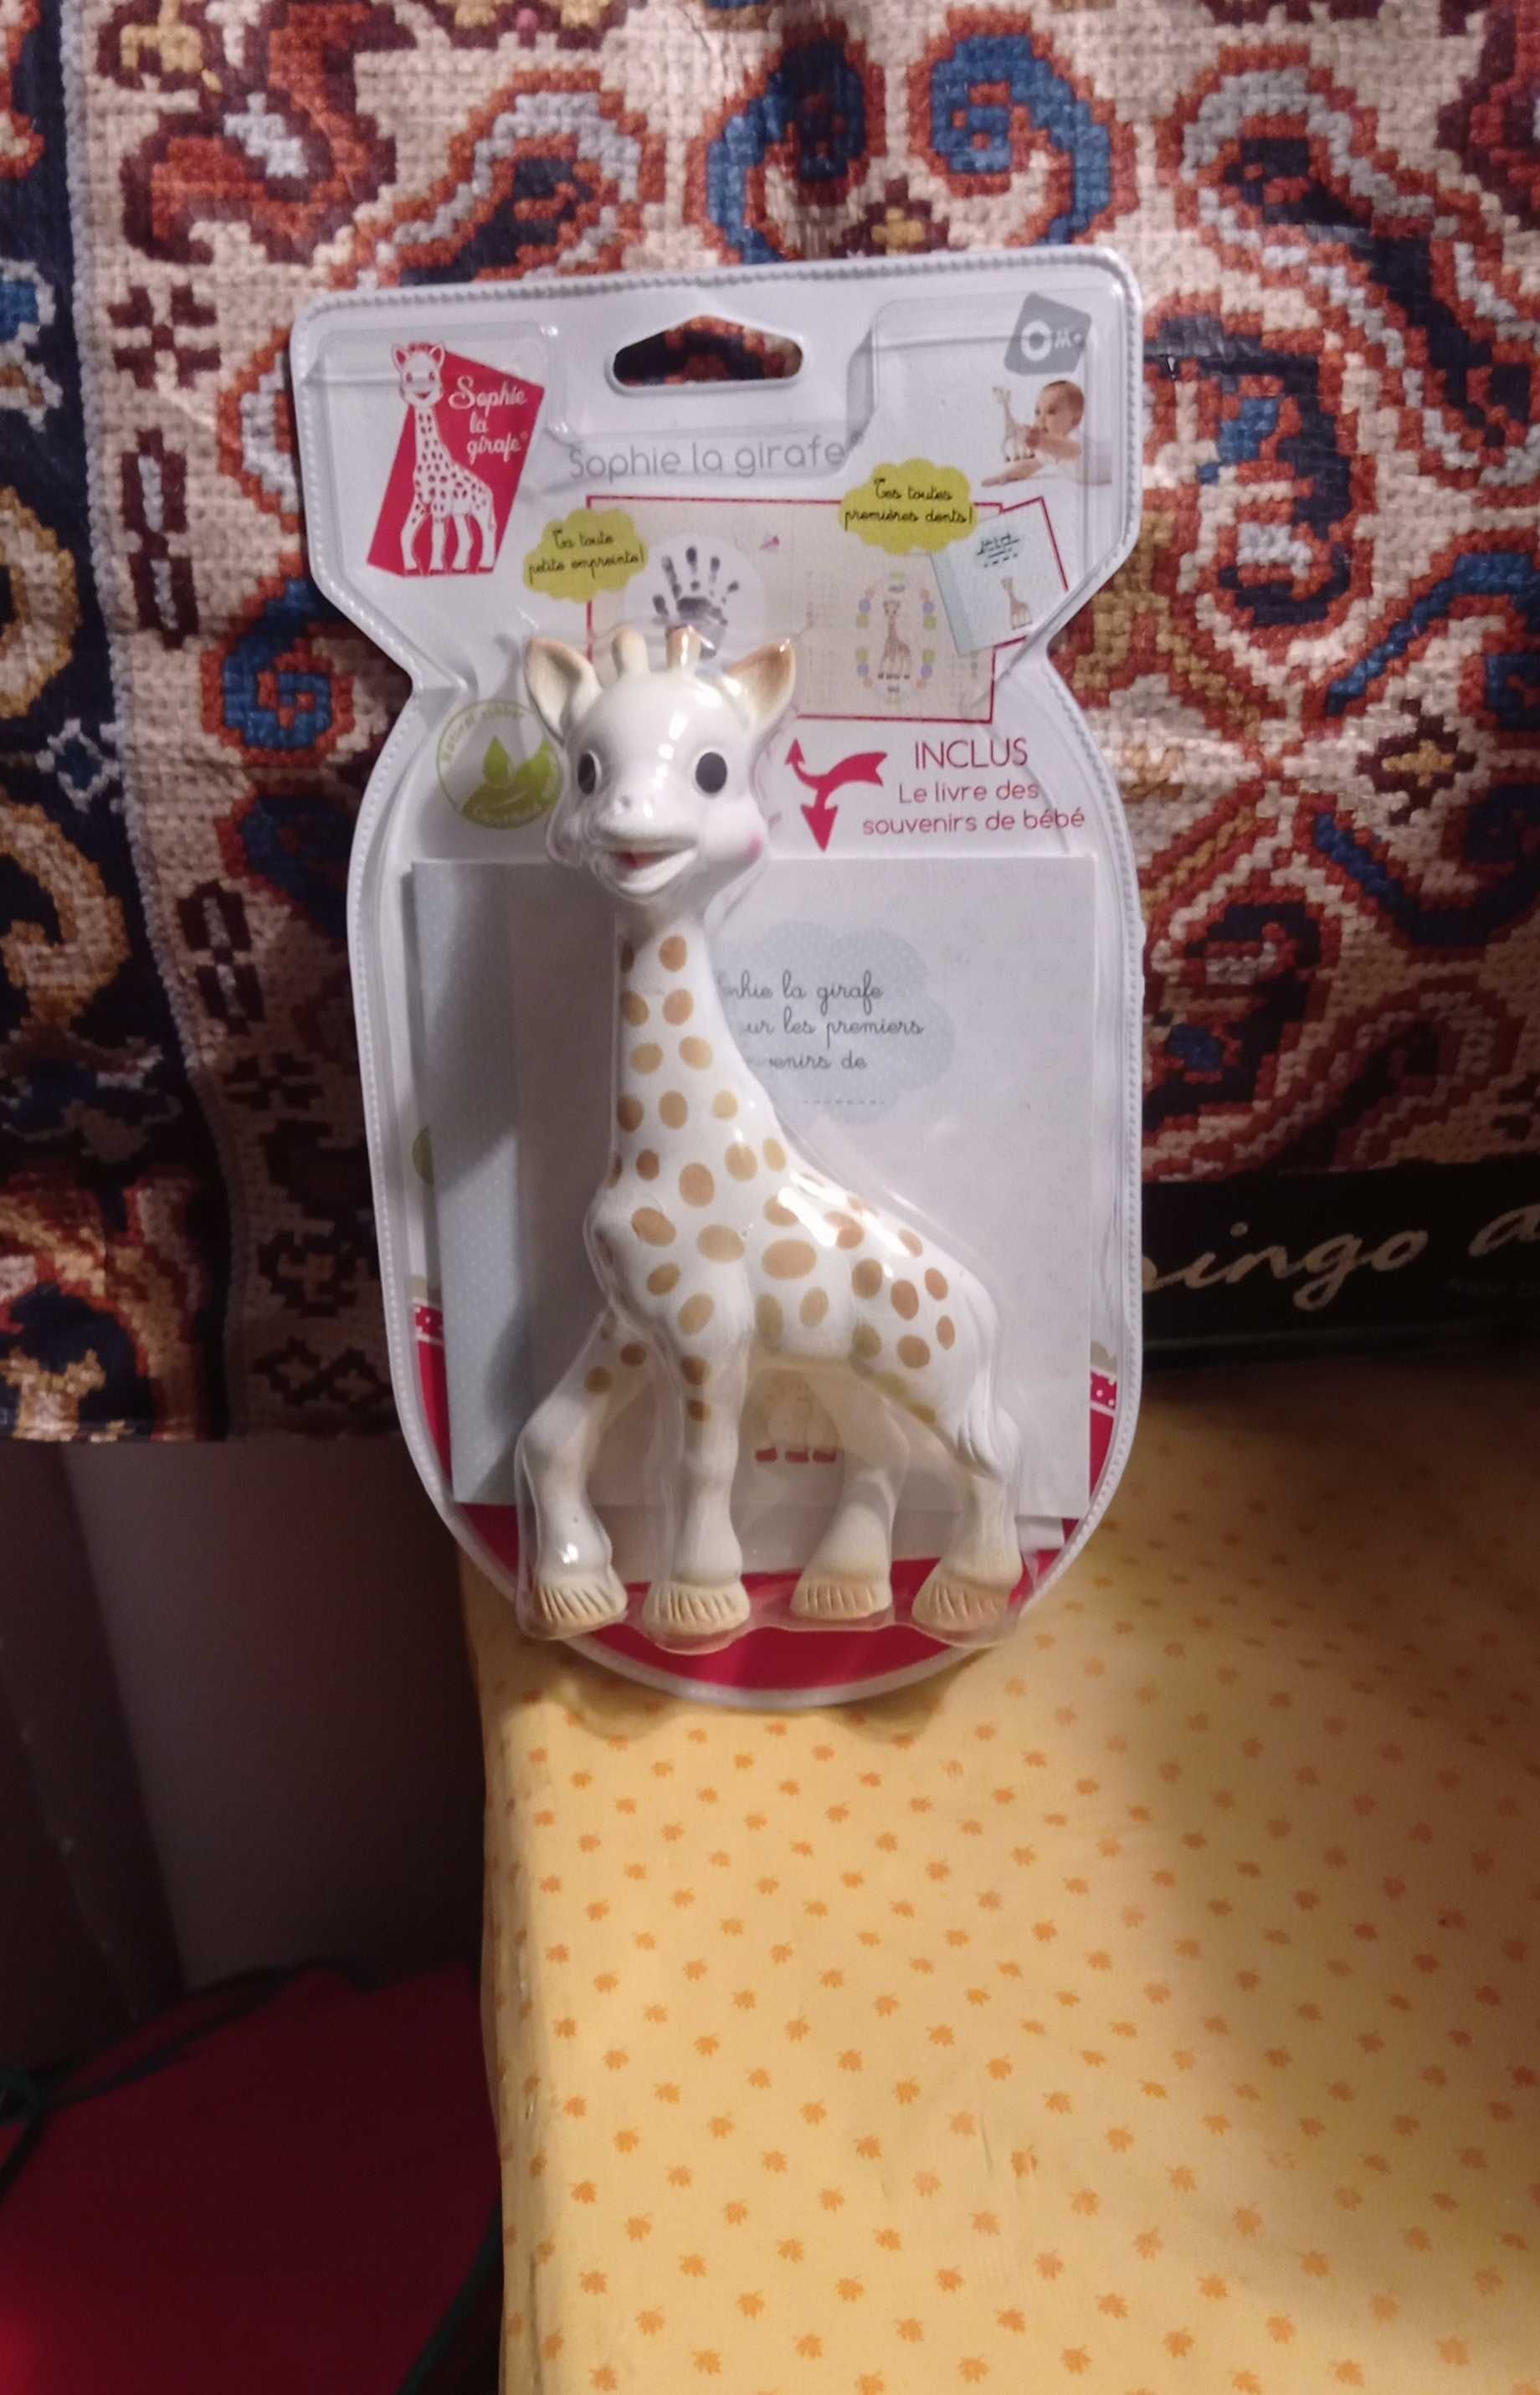 Girafa Sofia para bébé